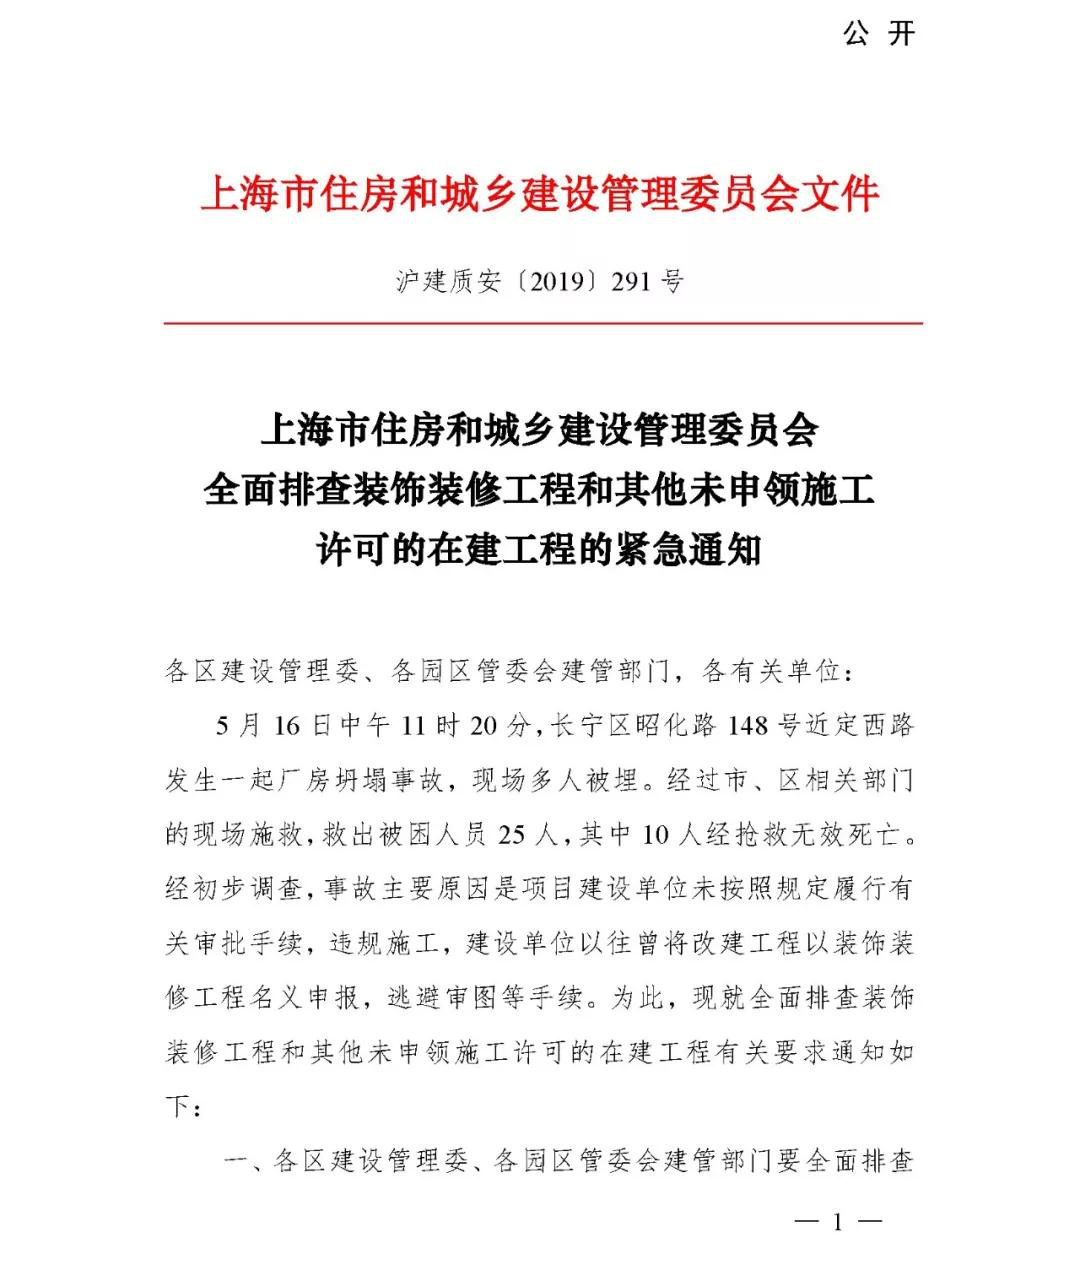 上海市住房和城市建设管理委员会通知文件01_悍马加固材料.png